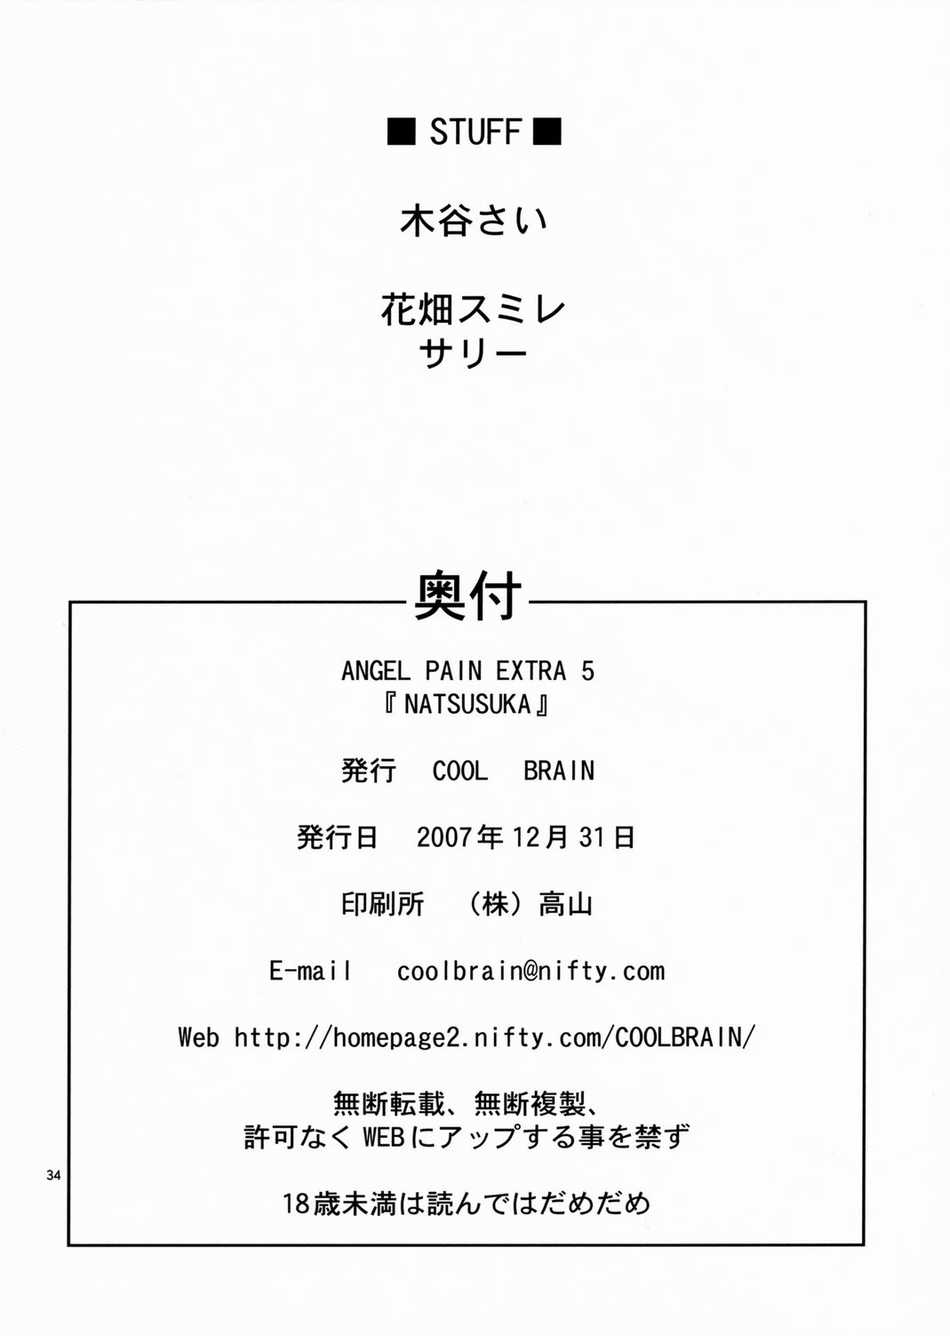 ANGEL PAIN Extra 5 -NATSUTSUKA- numero d'image 32